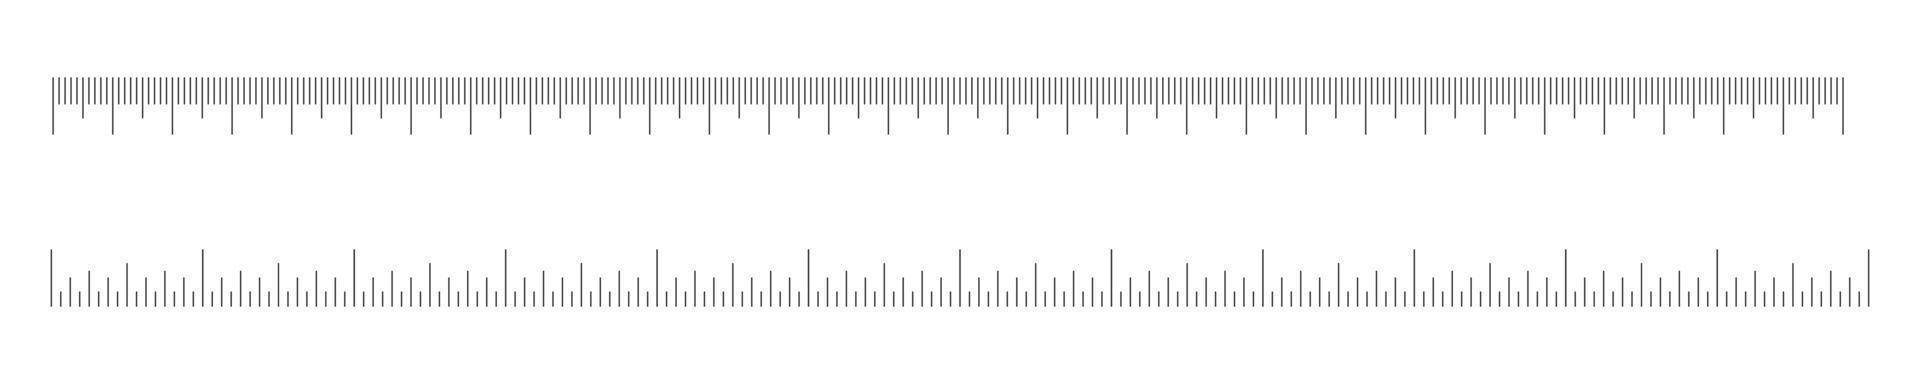 centimeter och ihch linjal skalor uppsättning. horisontell mätning Diagram med pålägg. distans, höjd eller längd mått verktyg mall vektor